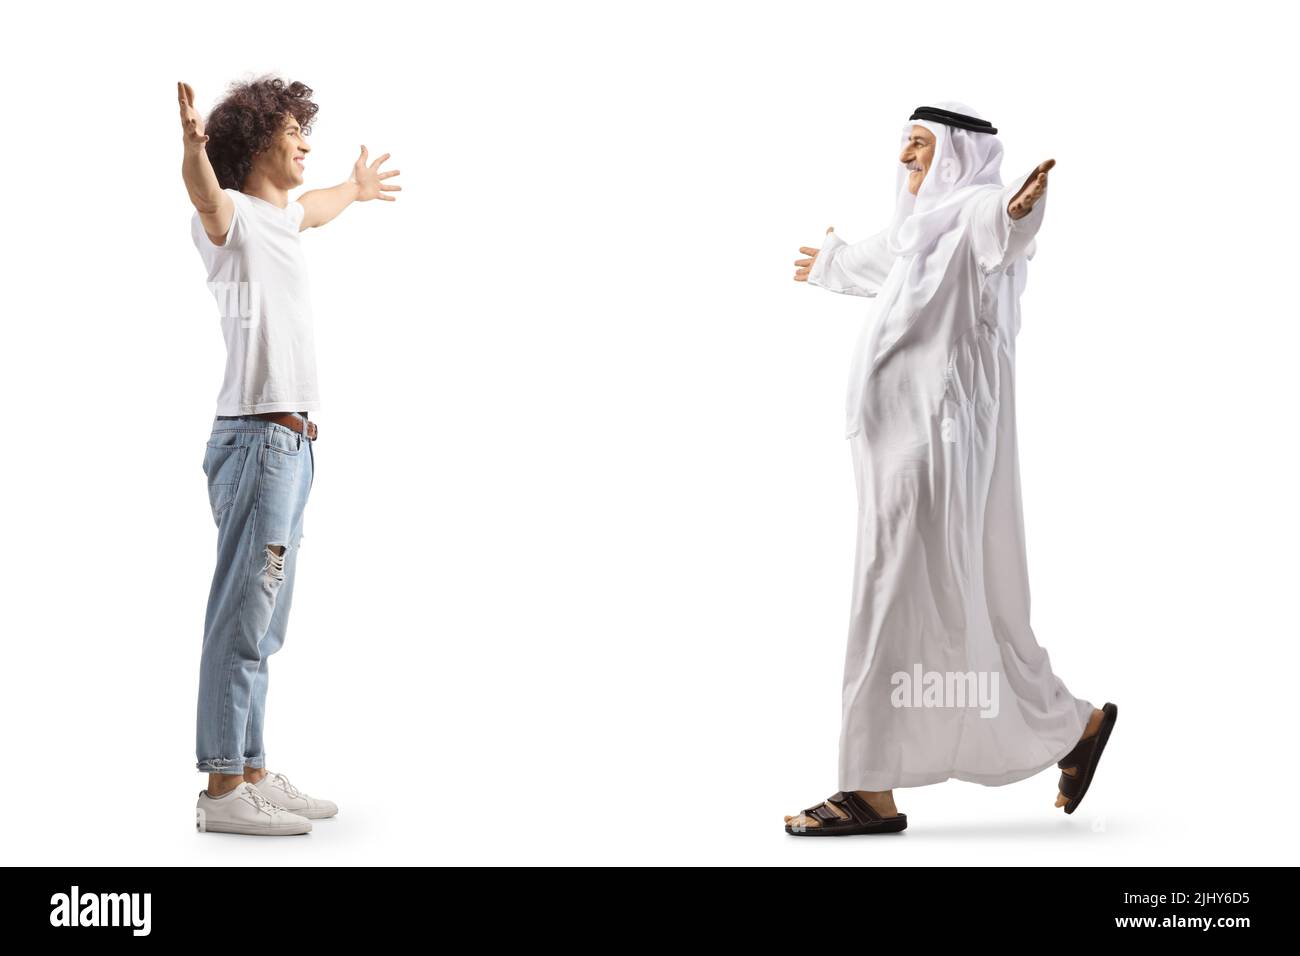 Immagine a tutto profilo di un giovane uomo che incontra un uomo arabo con le braccia aperte isolate su sfondo bianco Foto Stock